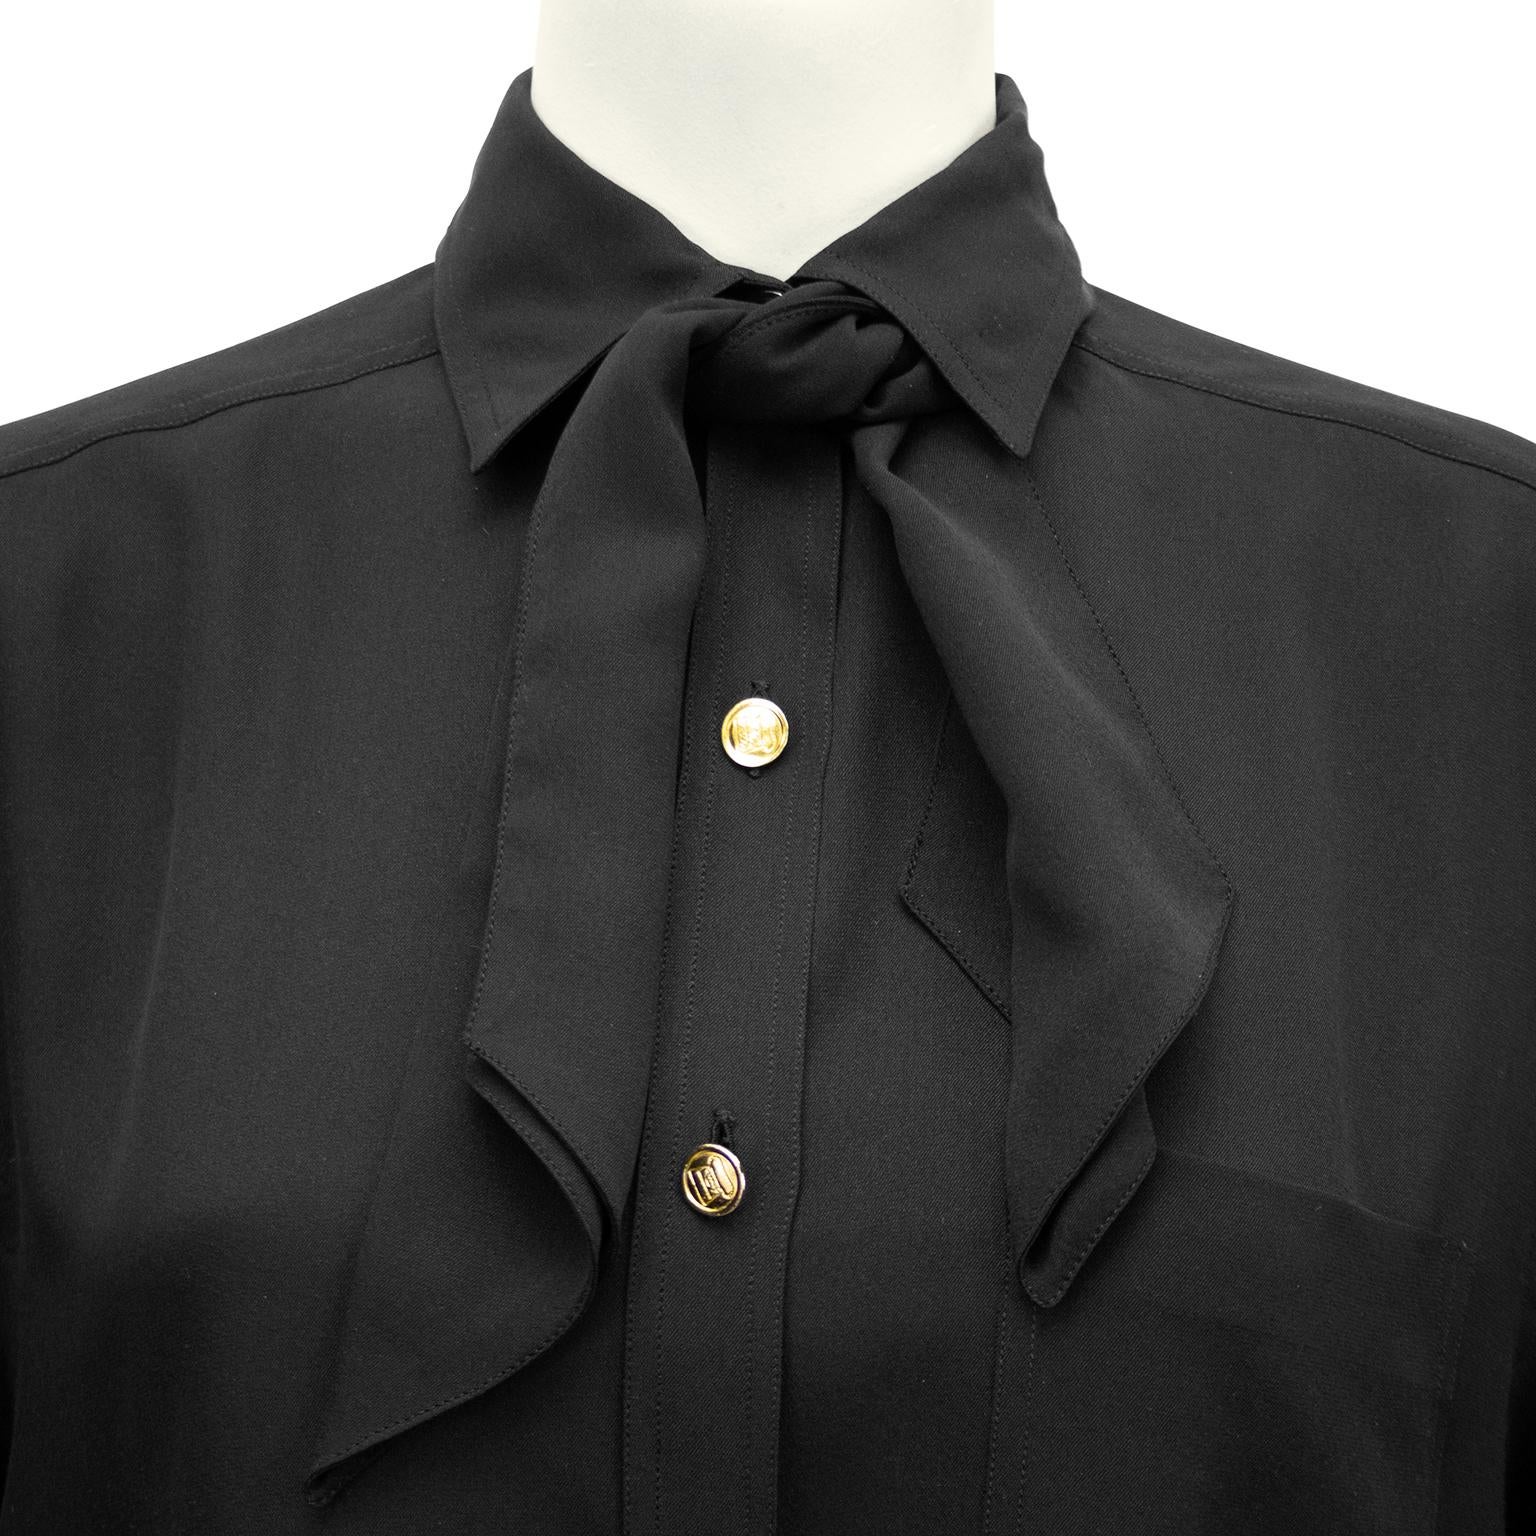 Women's 1990s Chanel Black Silk Shirt with Necktie